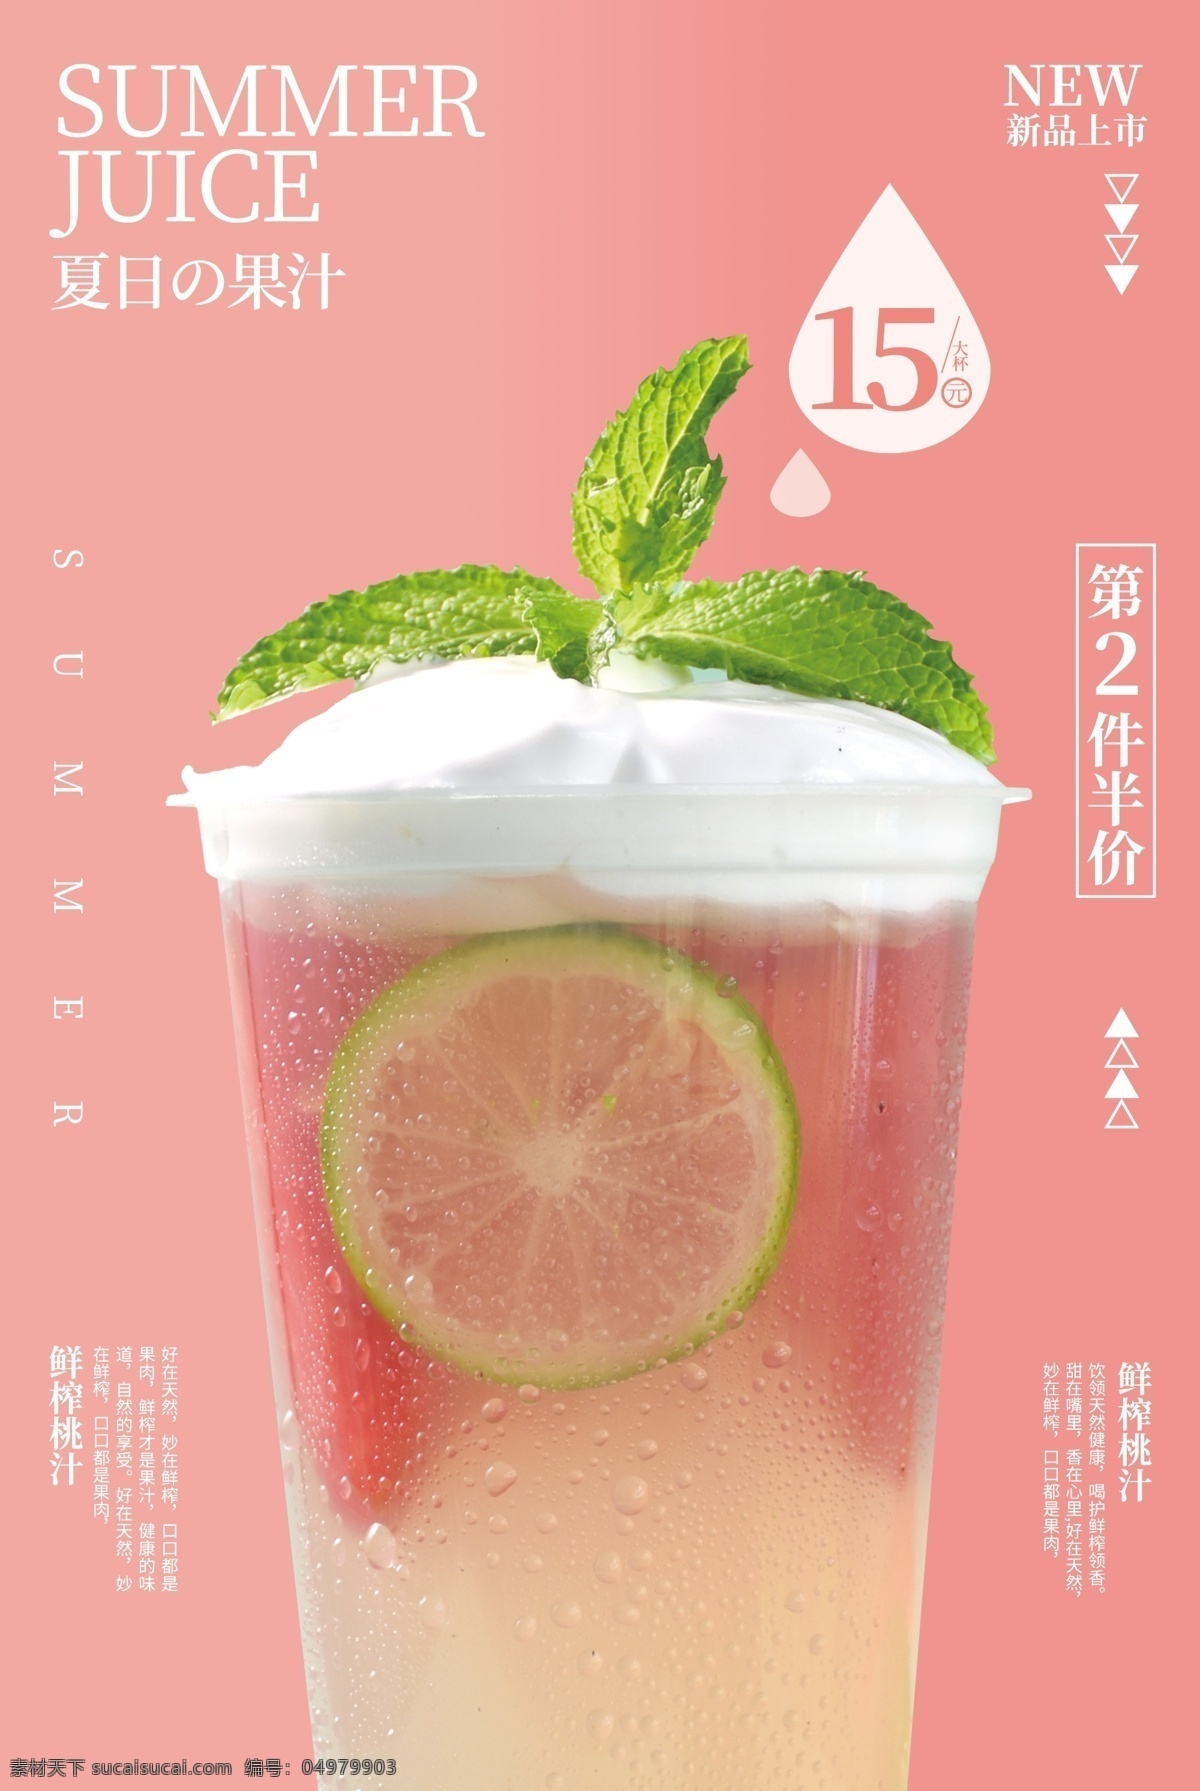 鲜榨 桃 汁 饮品 活动 促销 宣传海报 鲜榨桃汁 宣传 海报 饮料 甜品 类